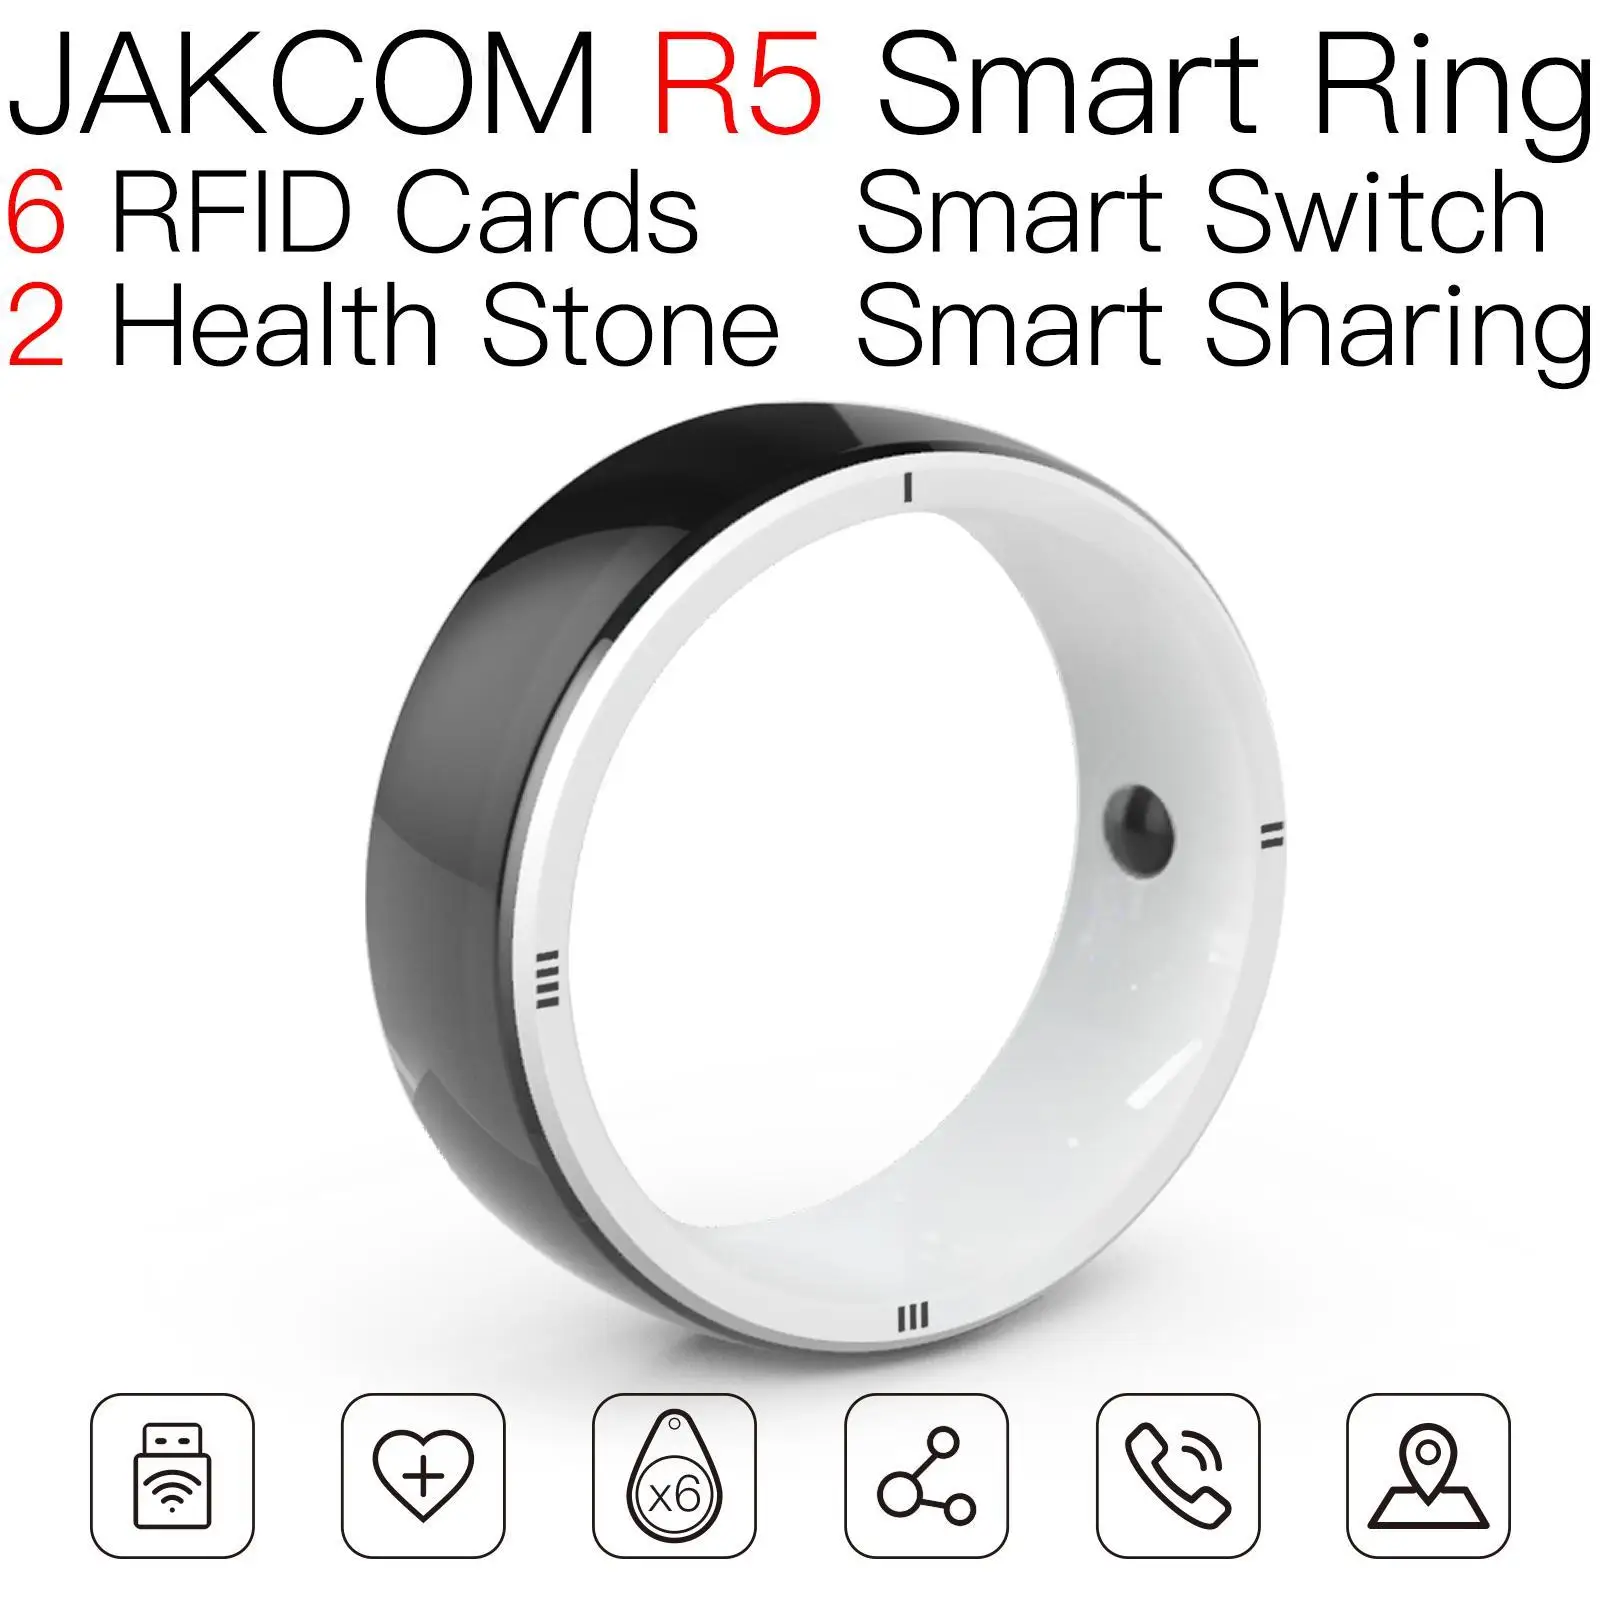 

Умное кольцо JAKCOM R5, лучше, чем ремешок 5, женские часы novo 2 coil, мужской браслет uk track global store realme 2020